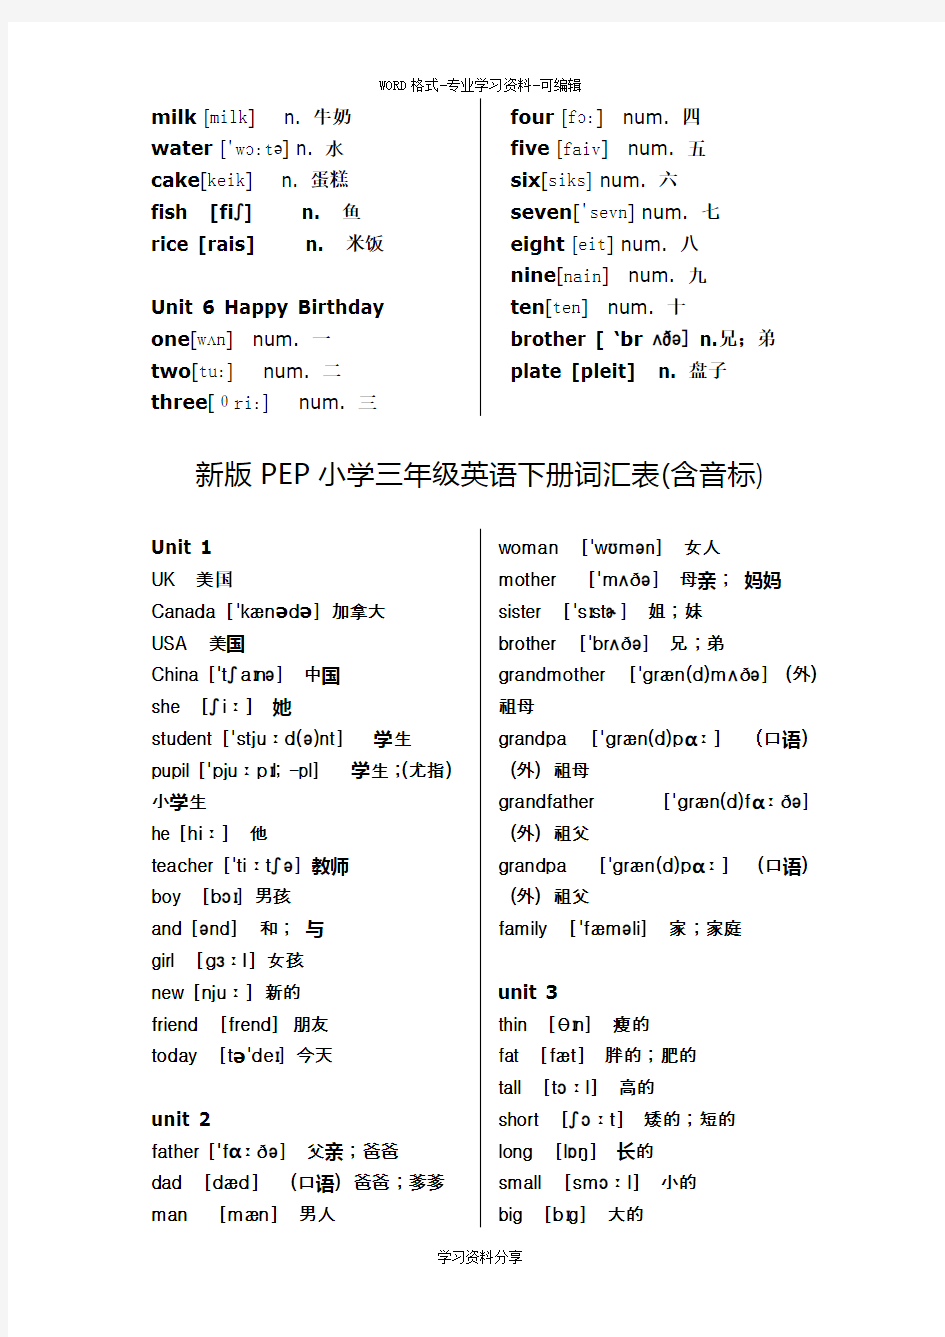 (完整版)新版PEP小学英语单词表